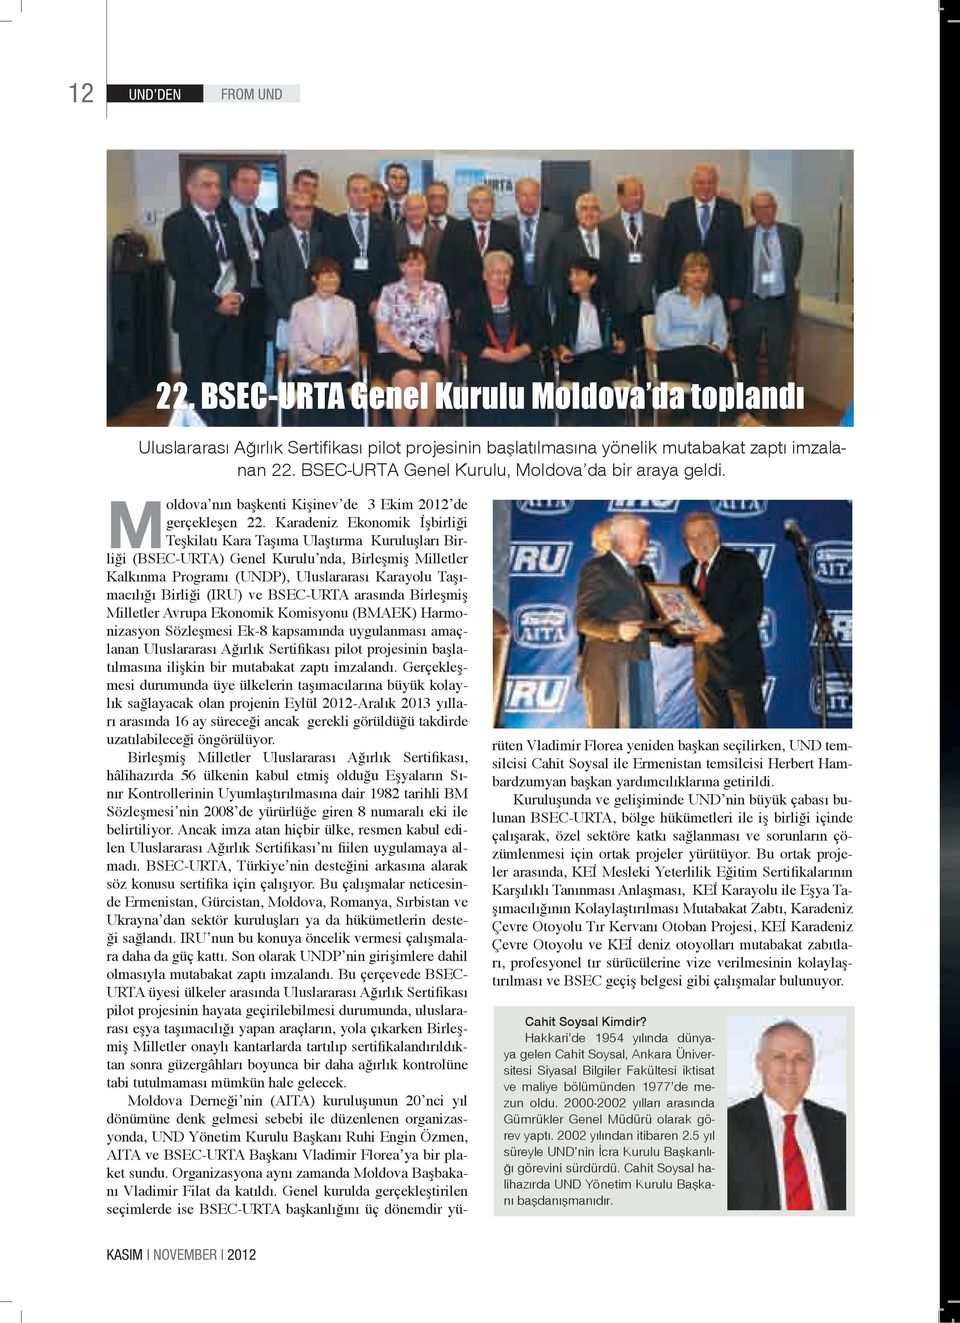 Karadeniz Ekonomik İşbirliği Teşkilatı Kara Taşıma Ulaştırma Kuruluşları Birliği (BSEC-URTA) Genel Kurulu nda, Birleşmiş Milletler Kalkınma Programı (UNDP), Uluslararası Karayolu Taşımacılığı Birliği